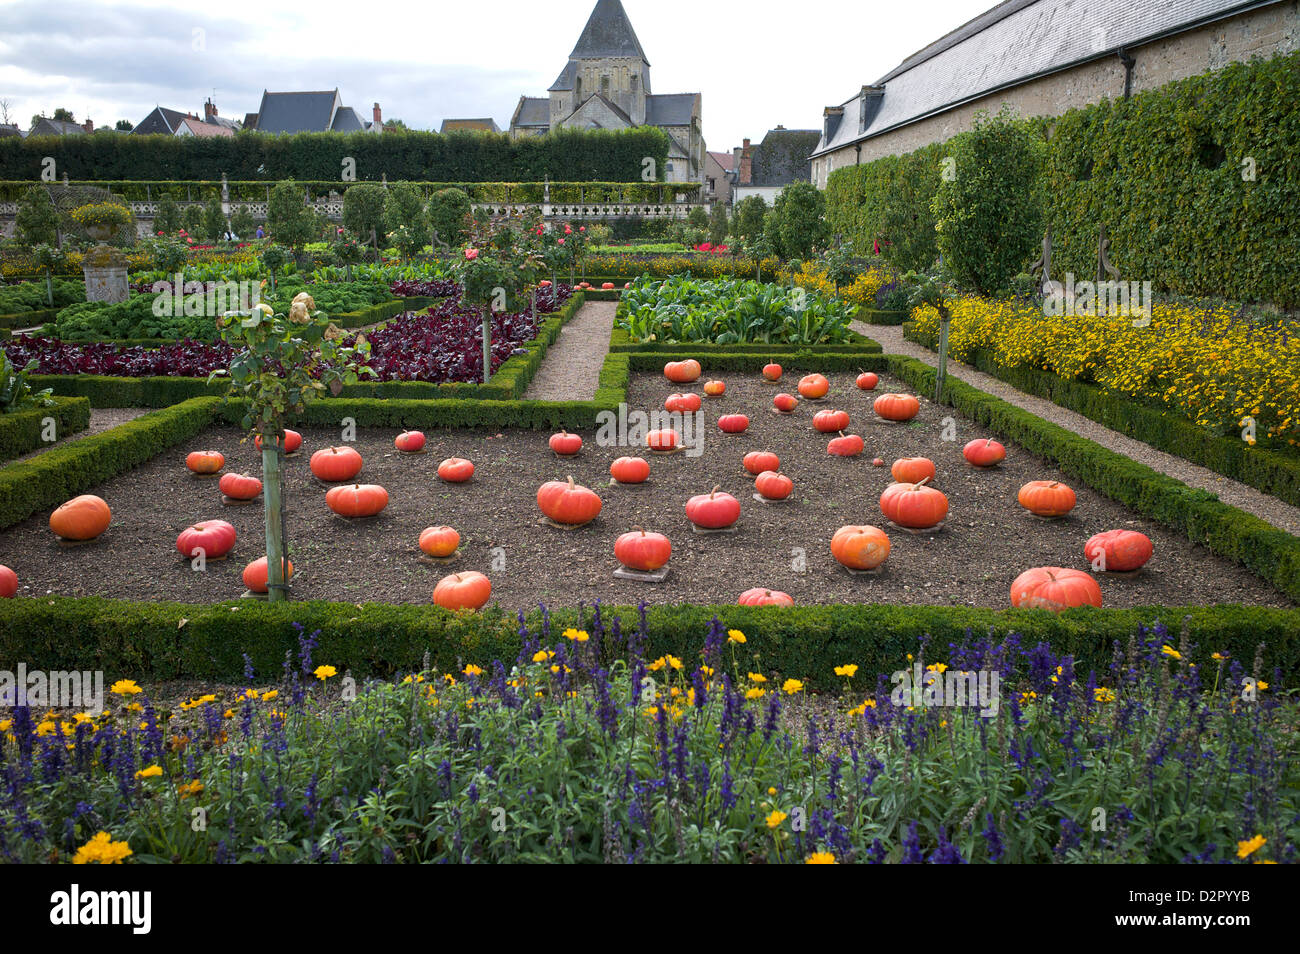 Vegetable garden, Chateau de Villandry, UNESCO World Heritage Site, Indre-et-Loire, Touraine, Loire Valley, France, Europe Stock Photo